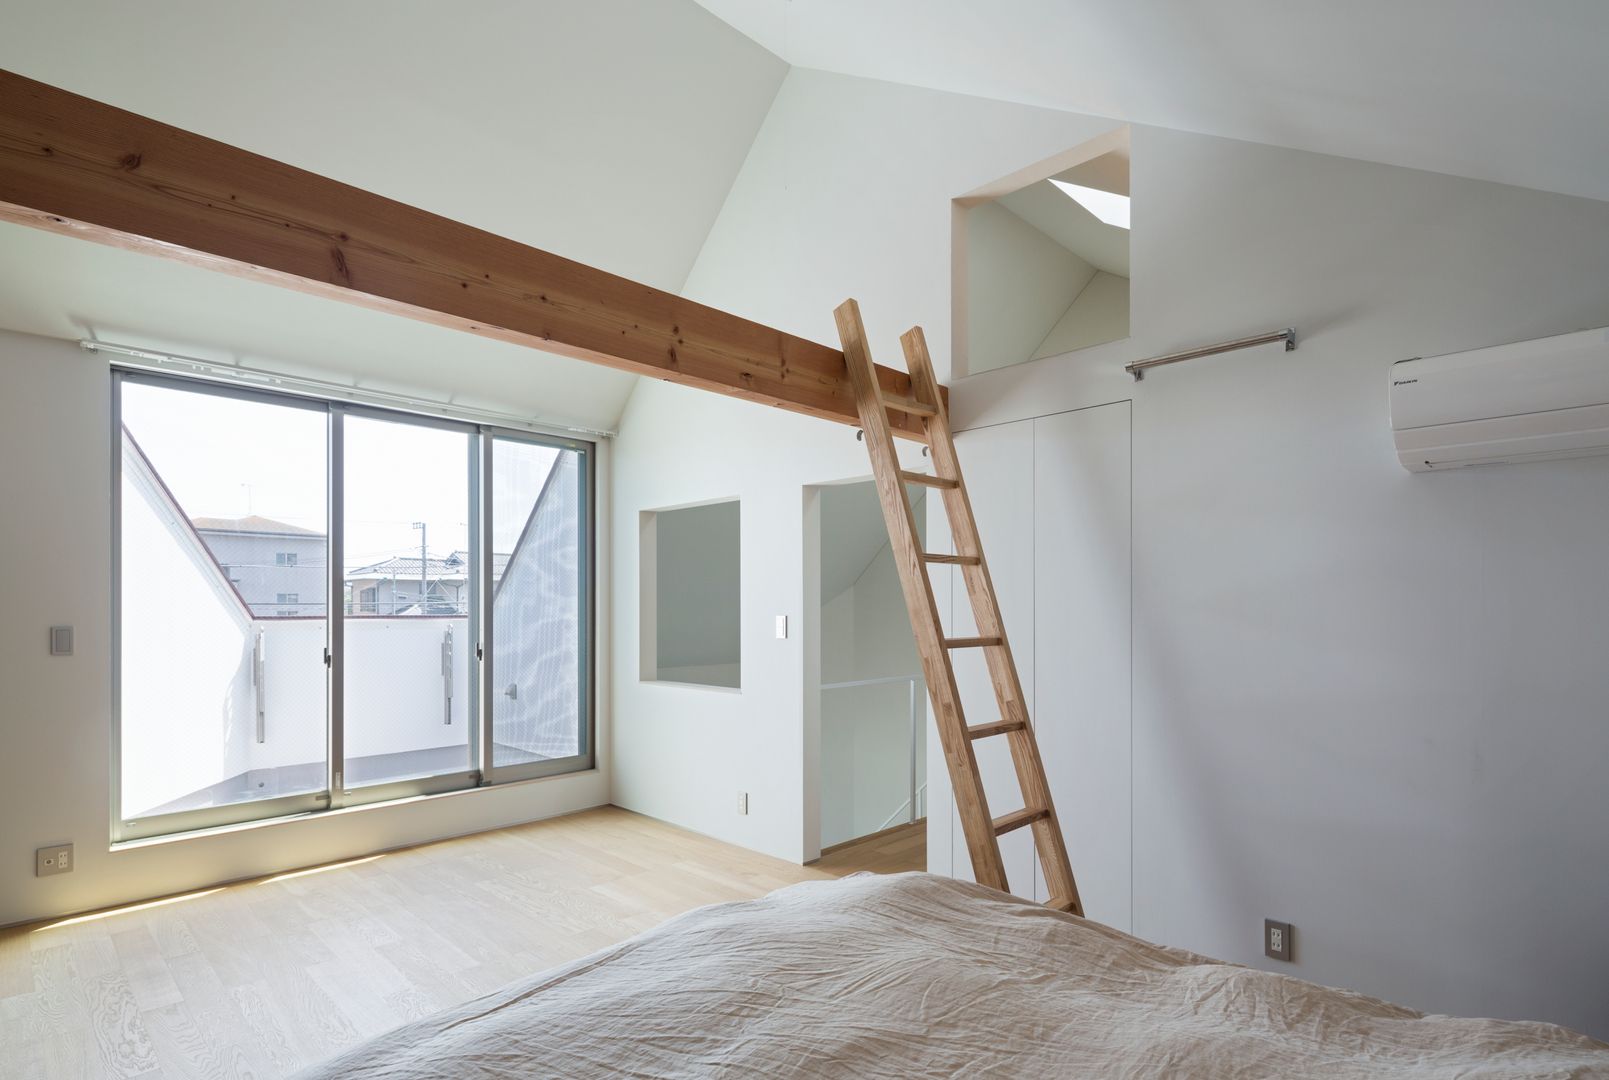 浜竹の家 House in Hamatake, 本間義章建築設計事務所 本間義章建築設計事務所 Modern style bedroom